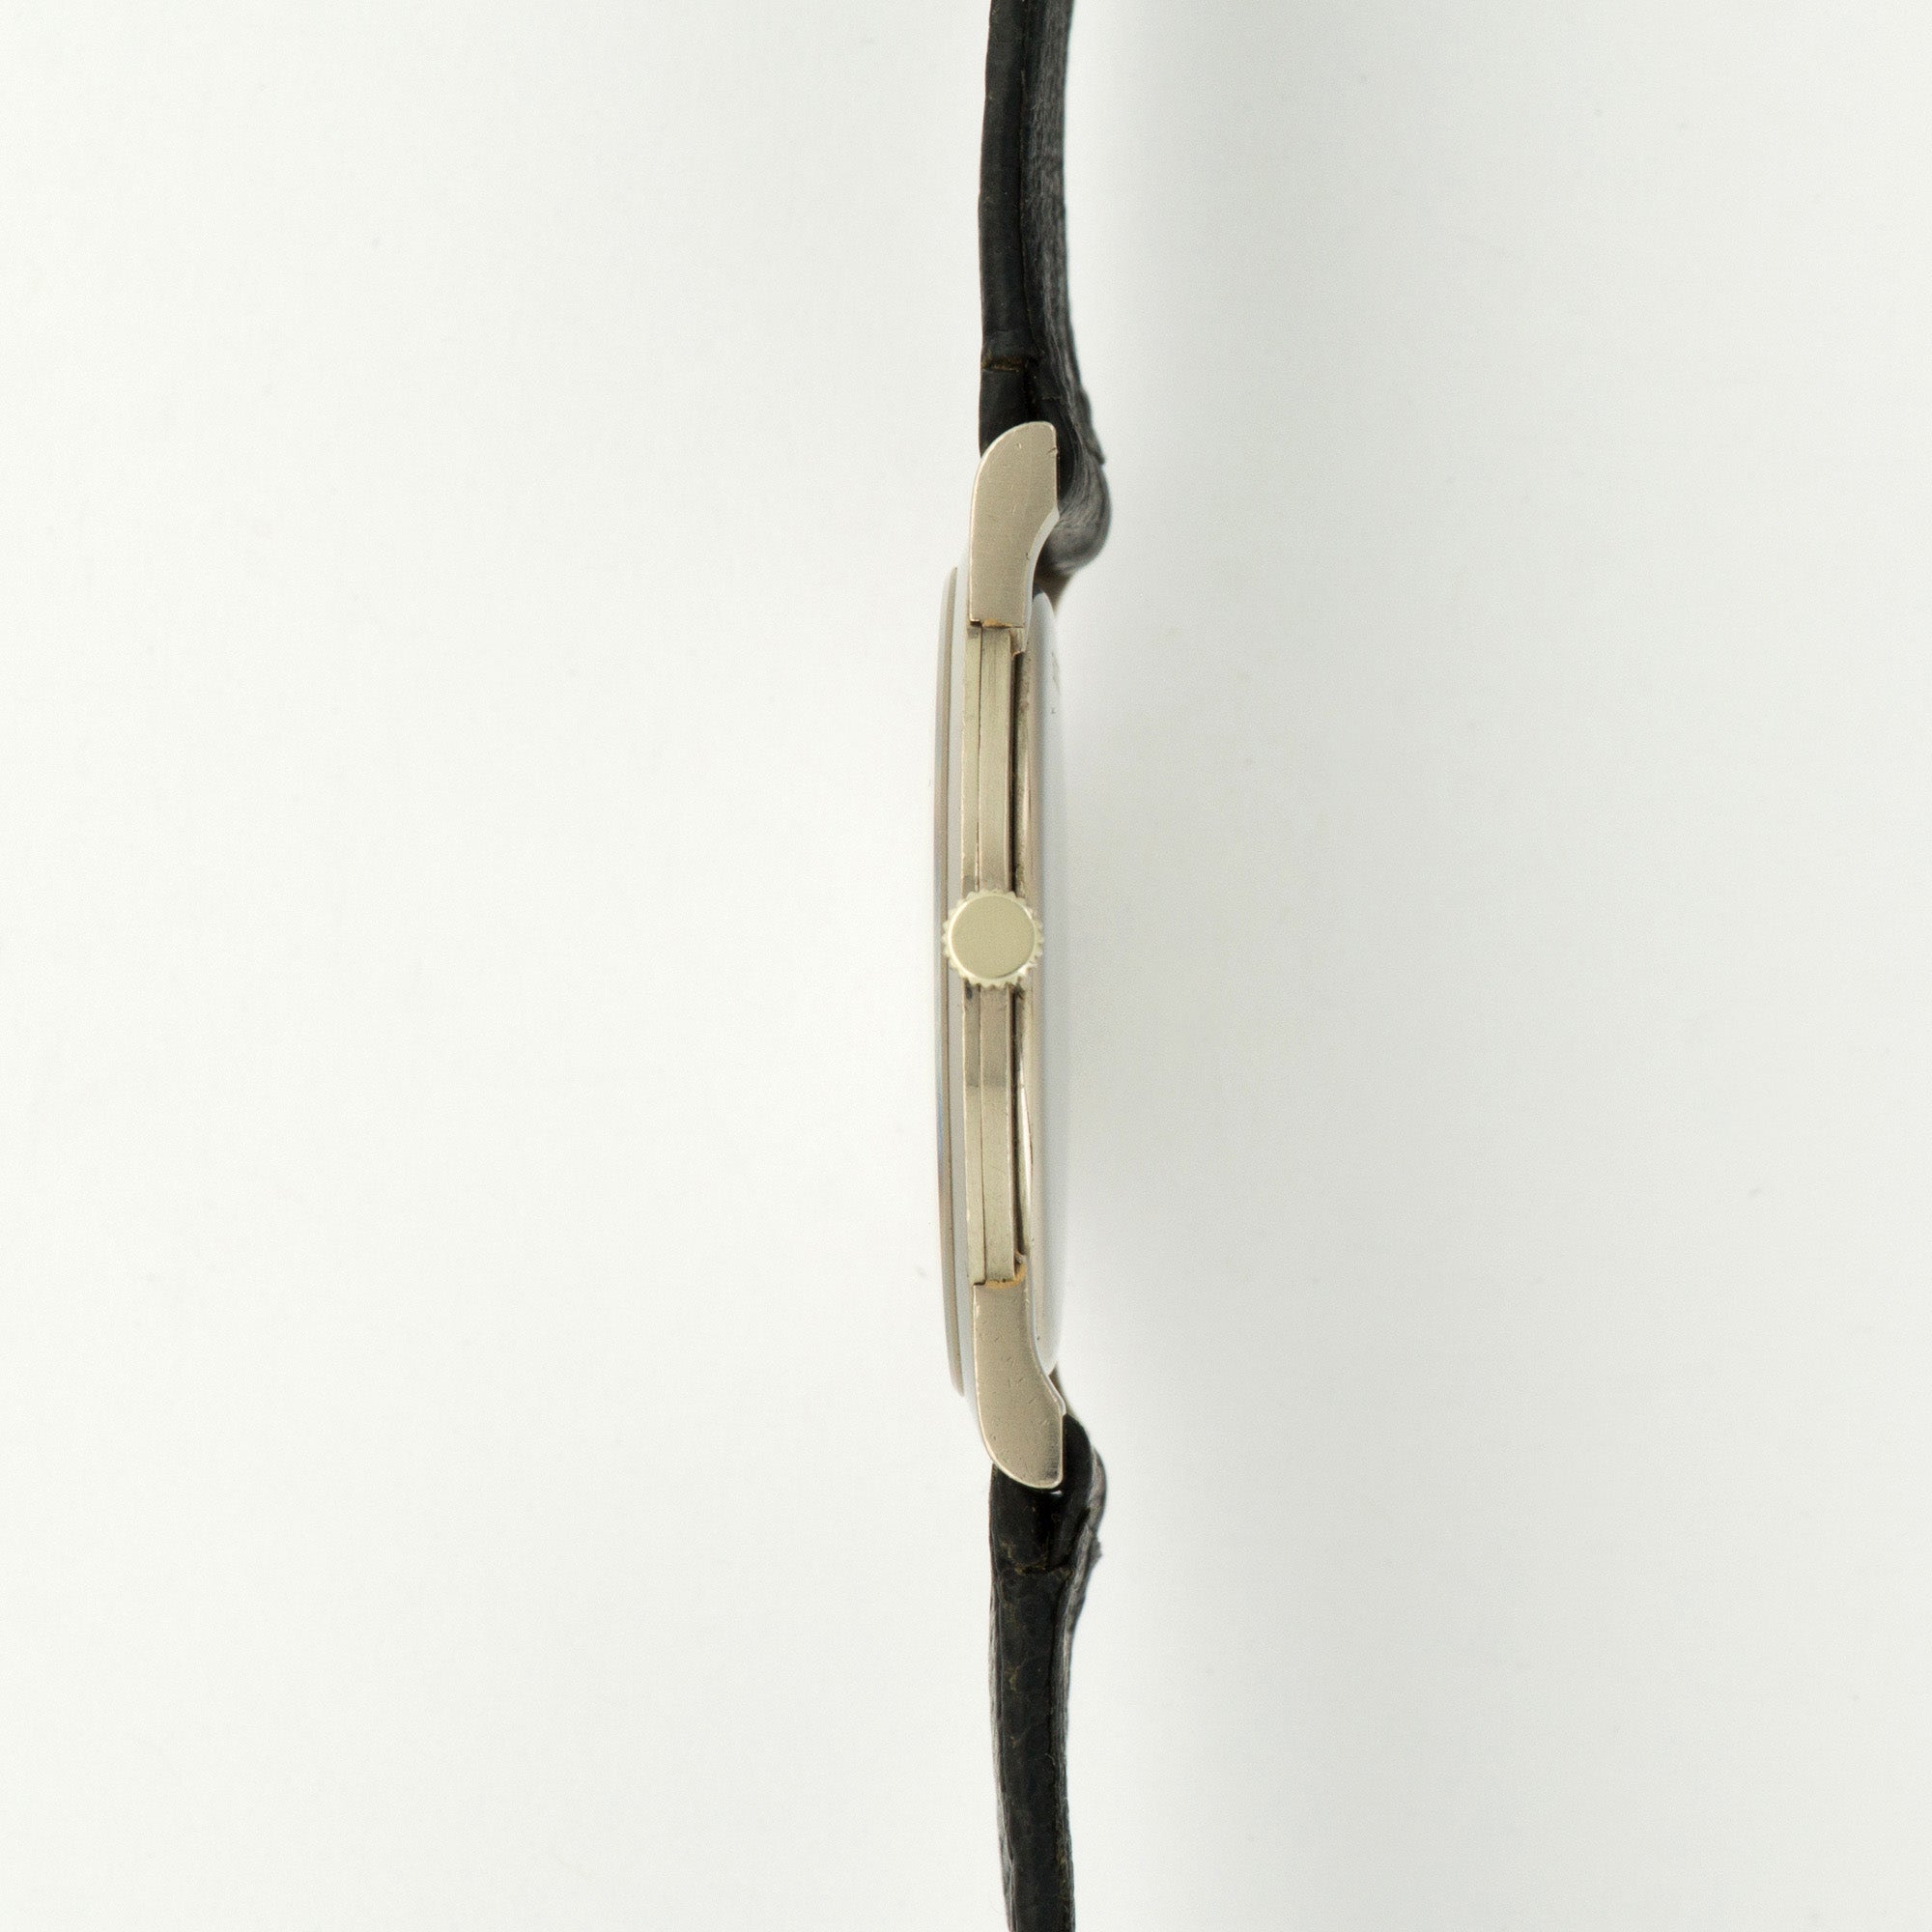 Audemars Piguet - Audemars Piguet White Gold Ultra-Thin Watch - The Keystone Watches